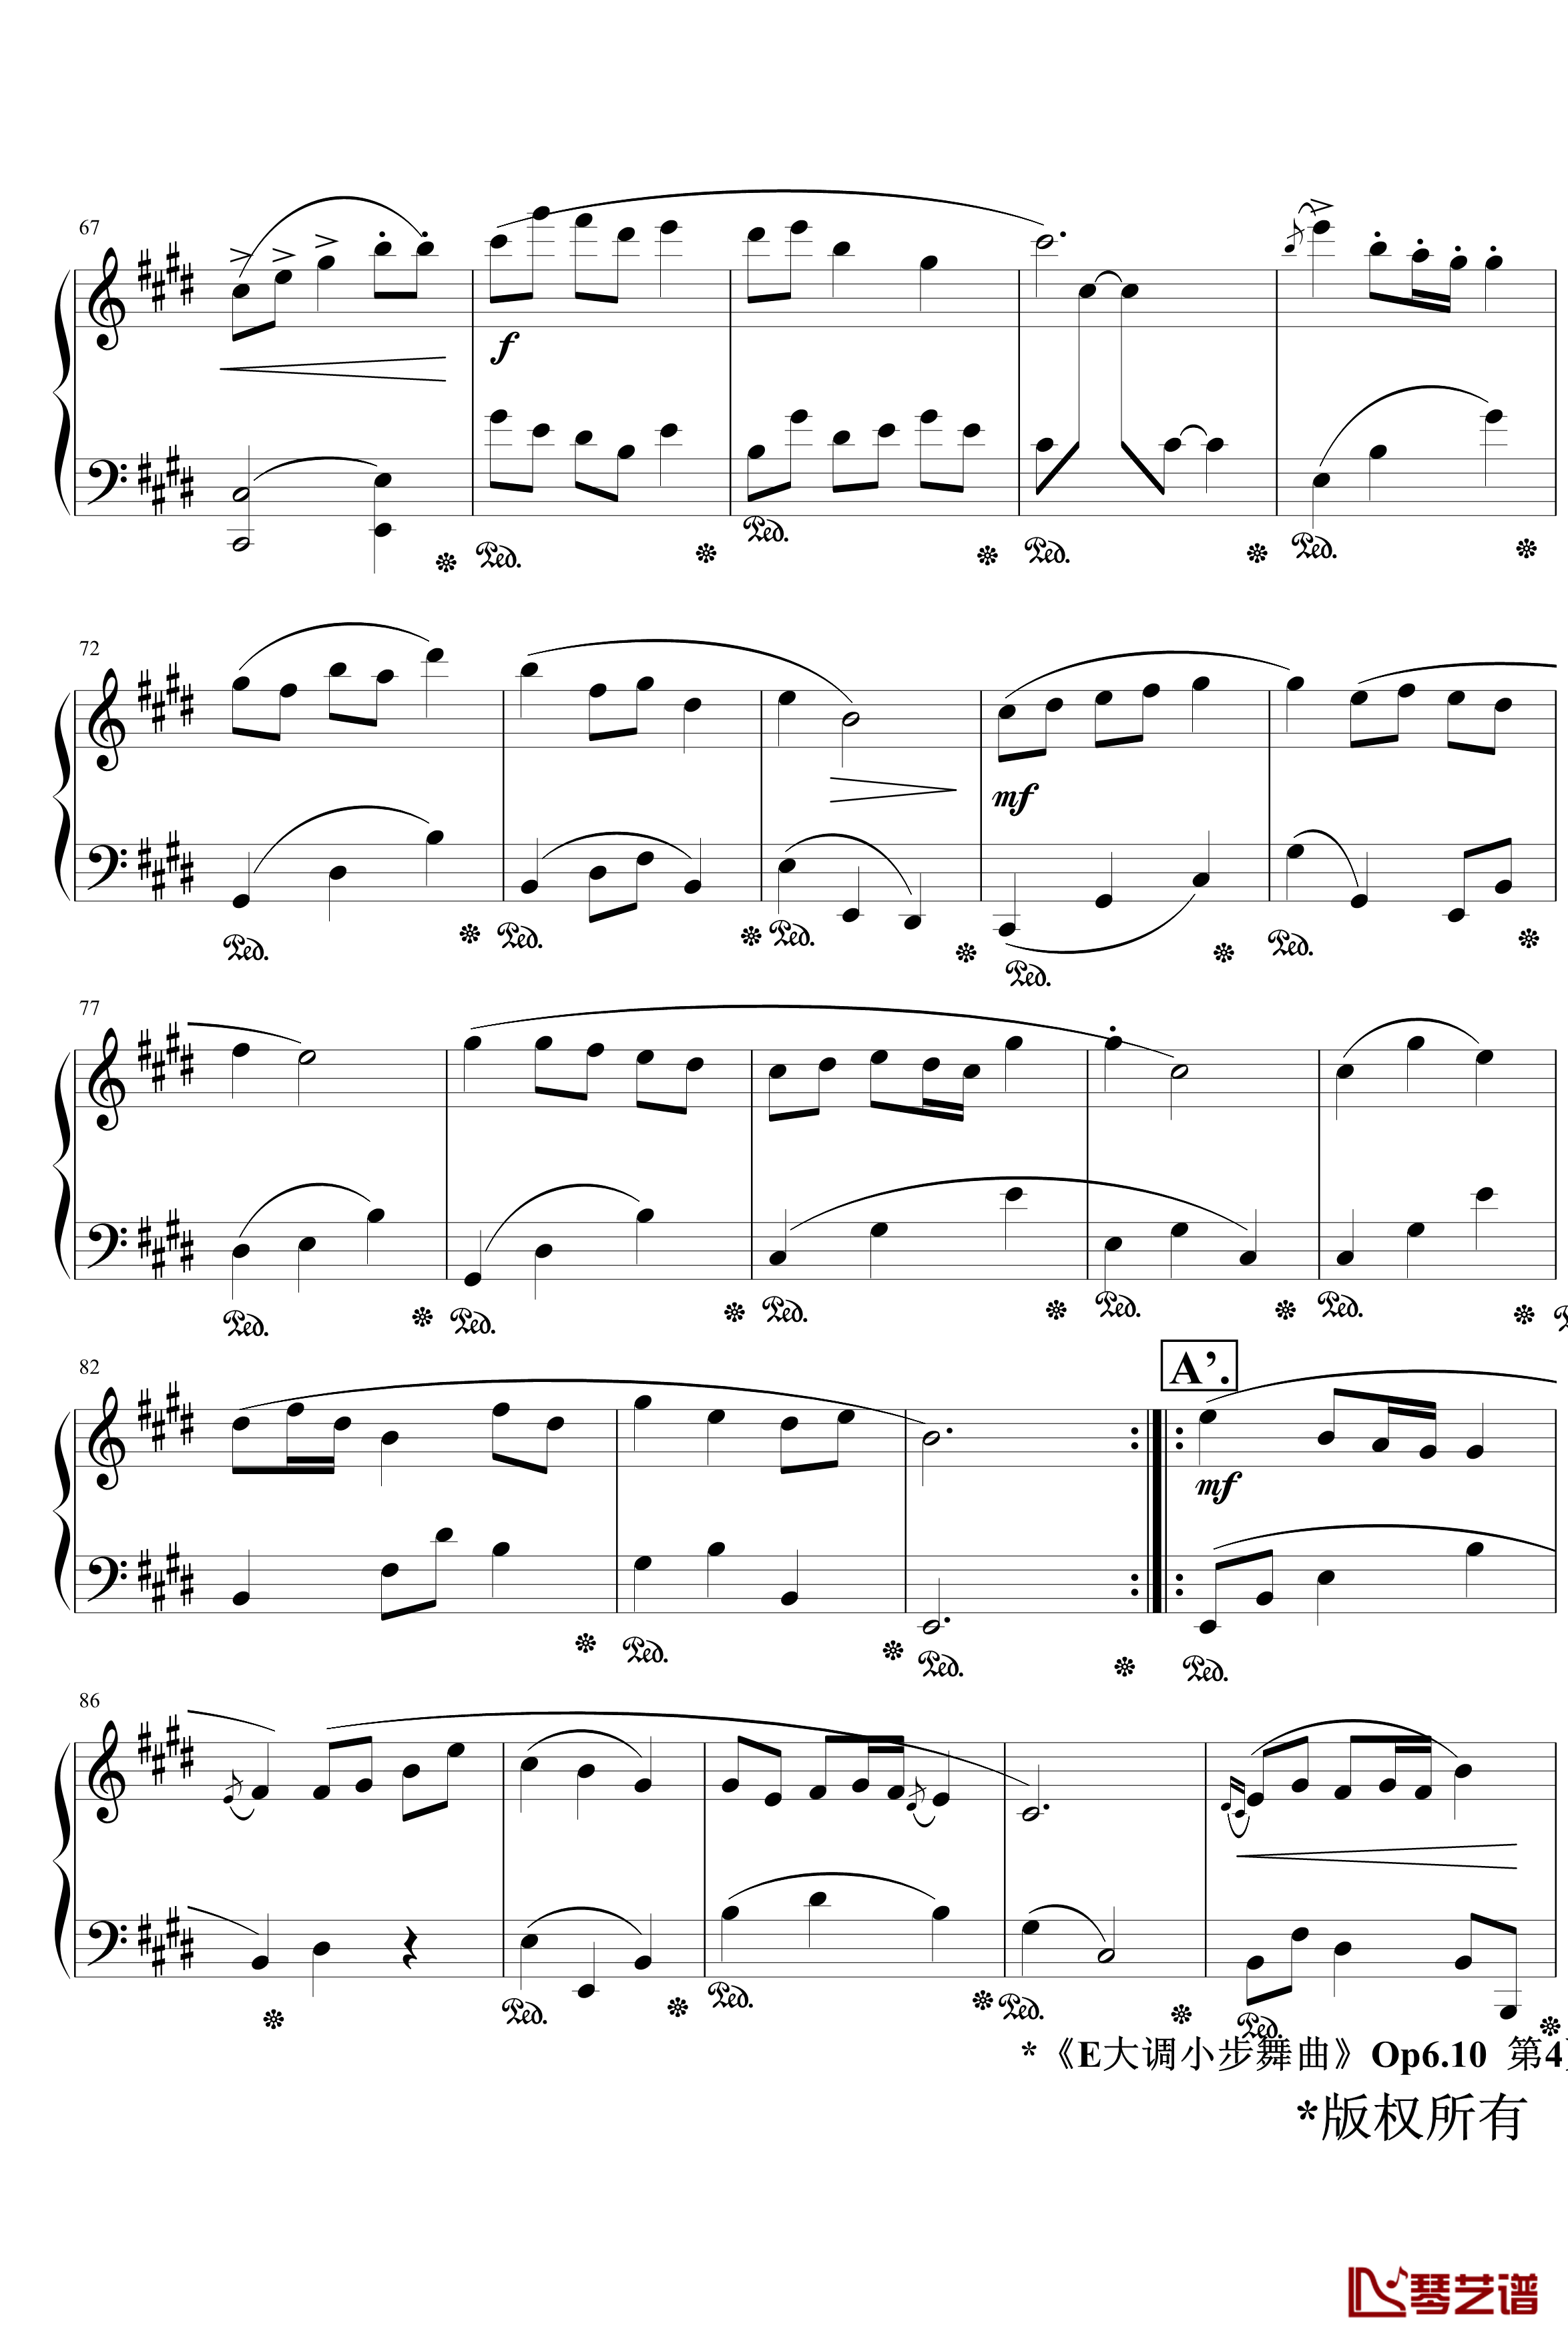 E大调小步舞曲Op6.10钢琴谱-jerry57434